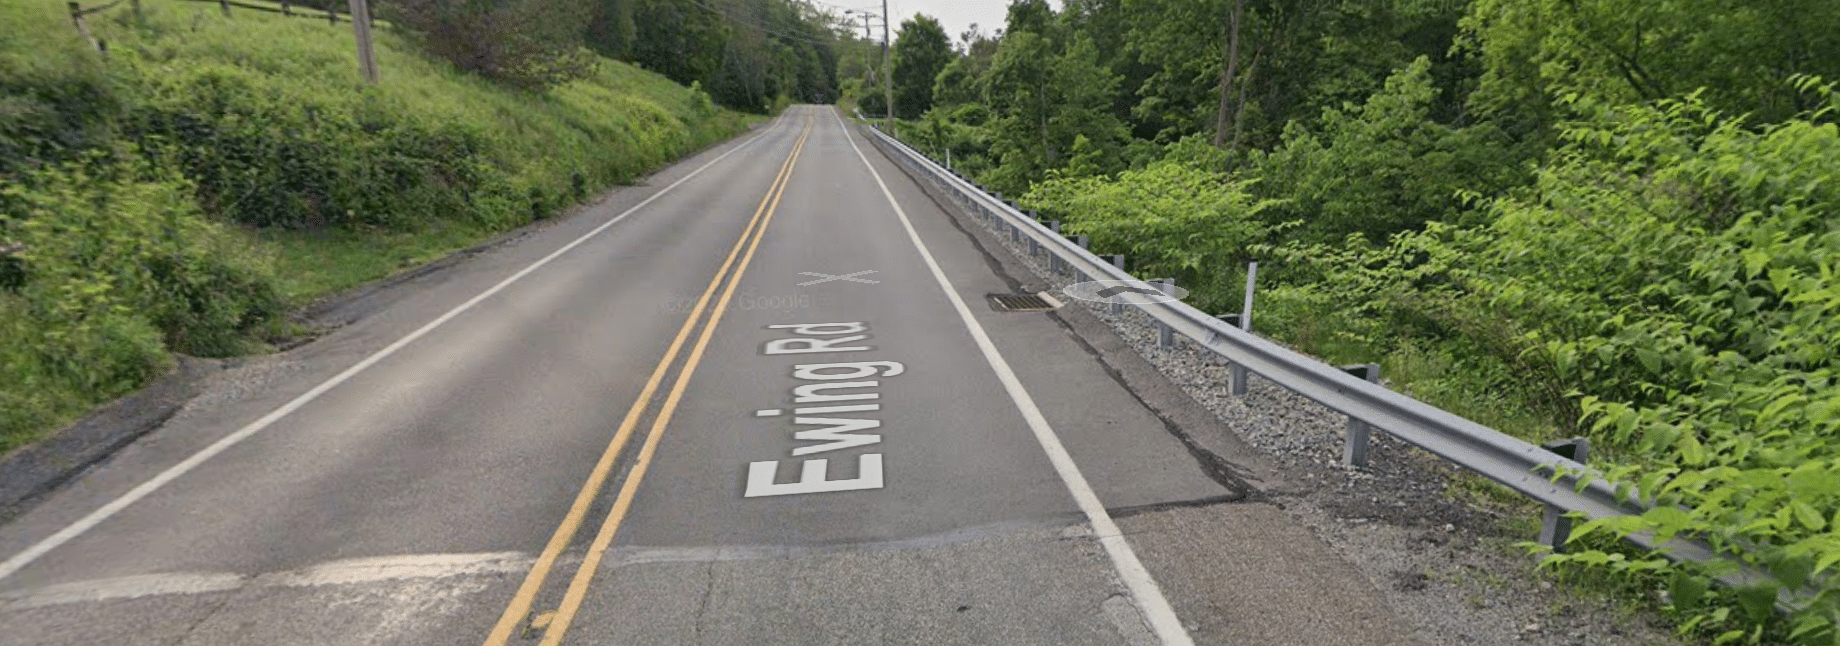 Ewing Road Emergency Slide Repair